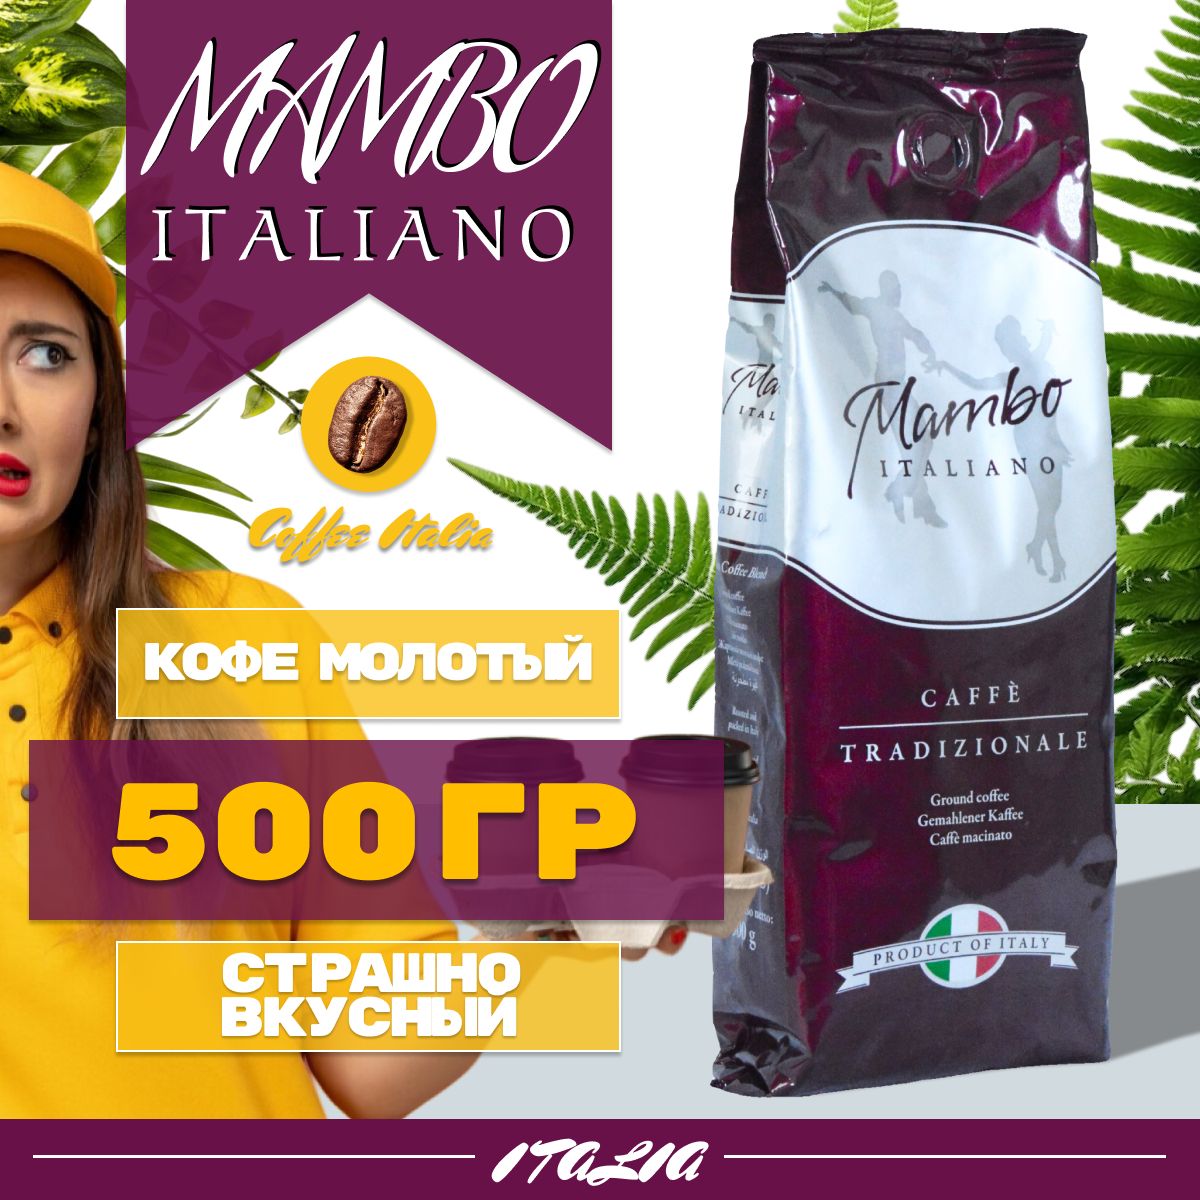 КофемолотыйMamboItaliano500гр.Итальянскиймолотыйкофе.